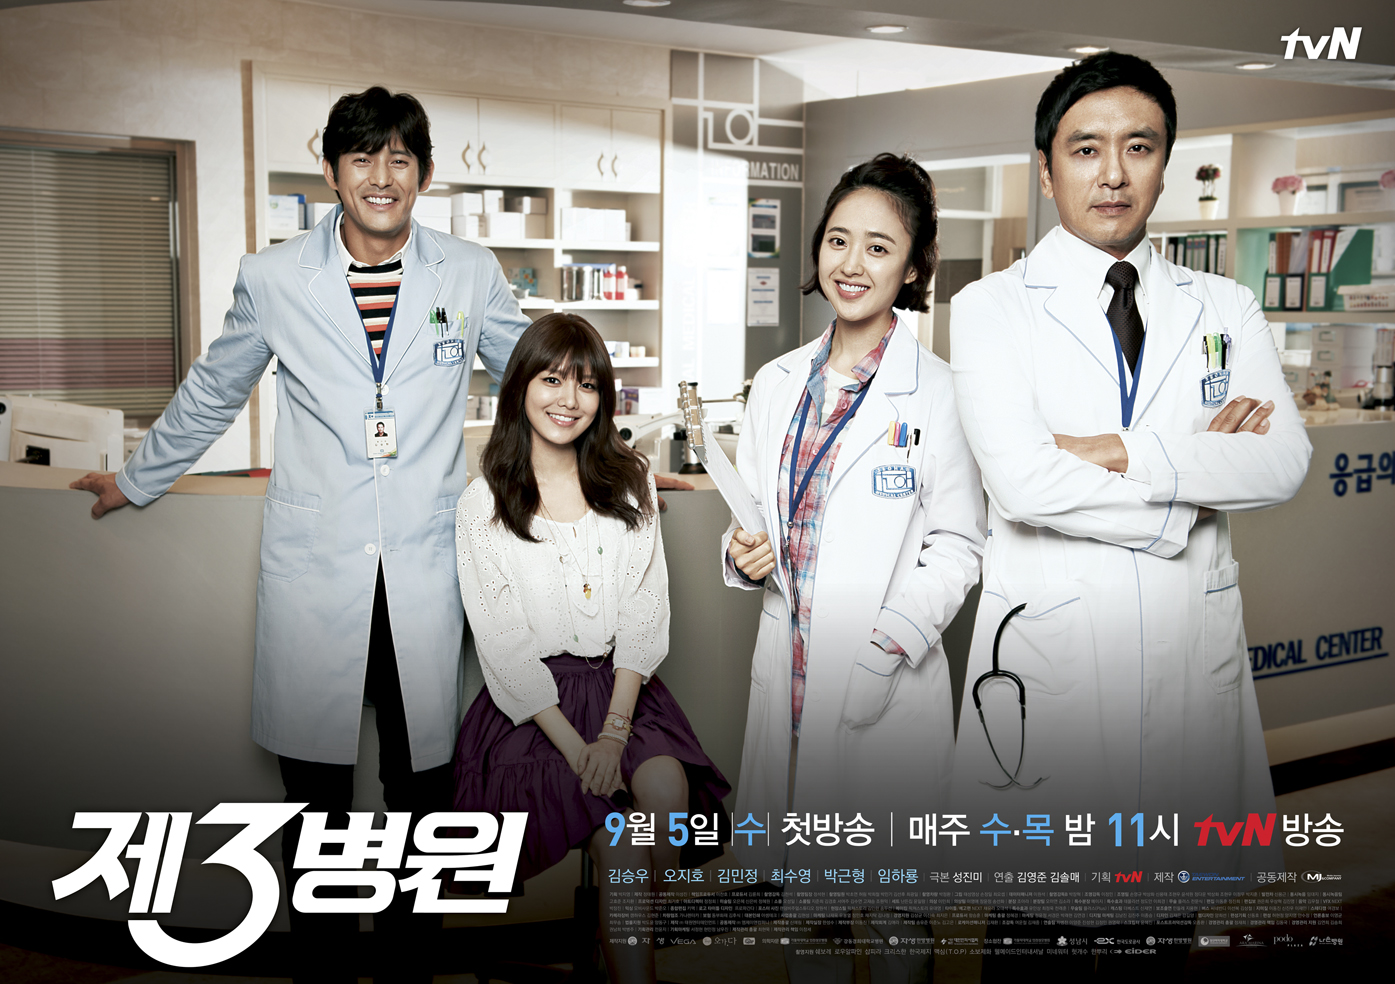 [OTHER][31-07-2012]Hình ảnh từ trường quay "The 3rd Hospital" của SooYoung - Page 3 4KSVWH5IB76CN9AKOPPL